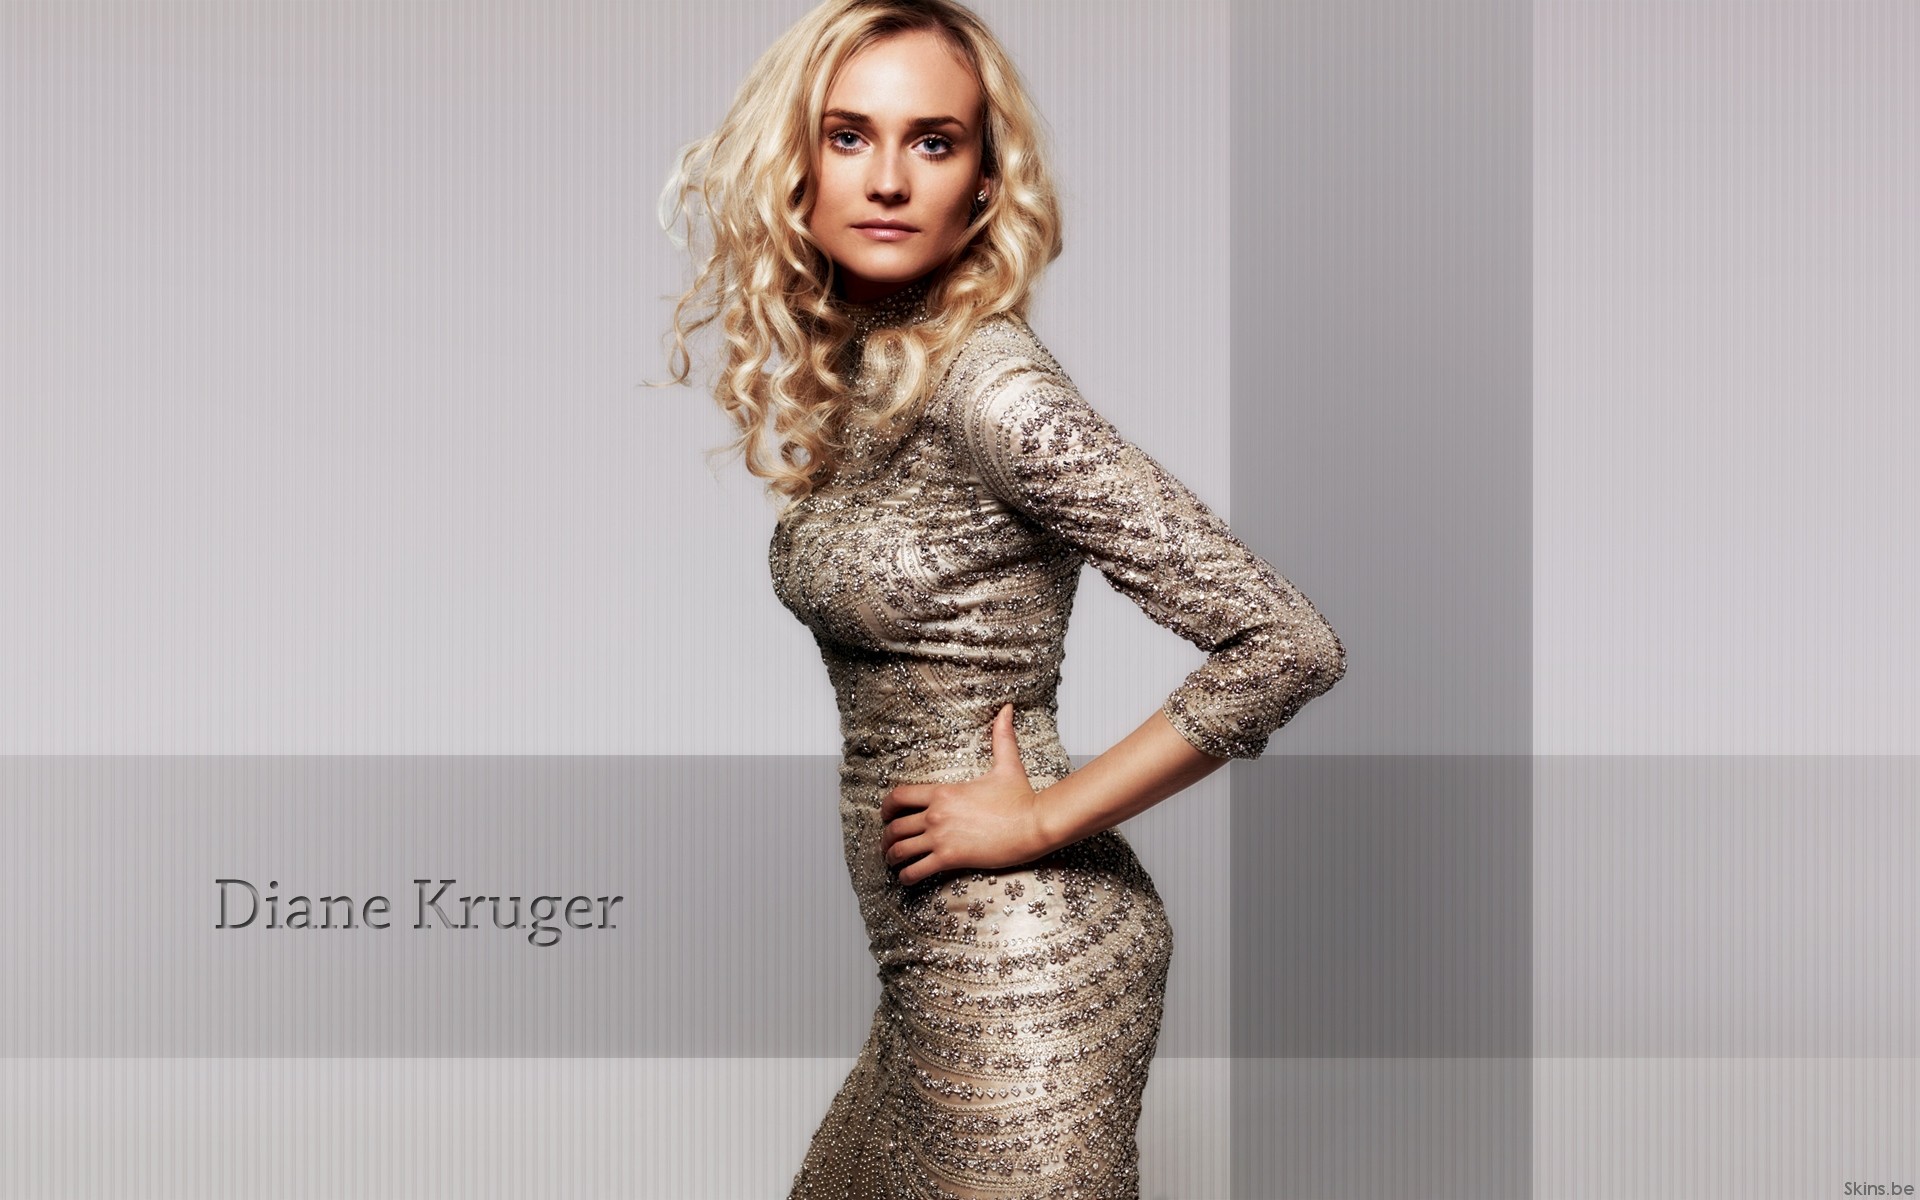 Free download wallpaper Celebrity, Diane Kruger on your PC desktop